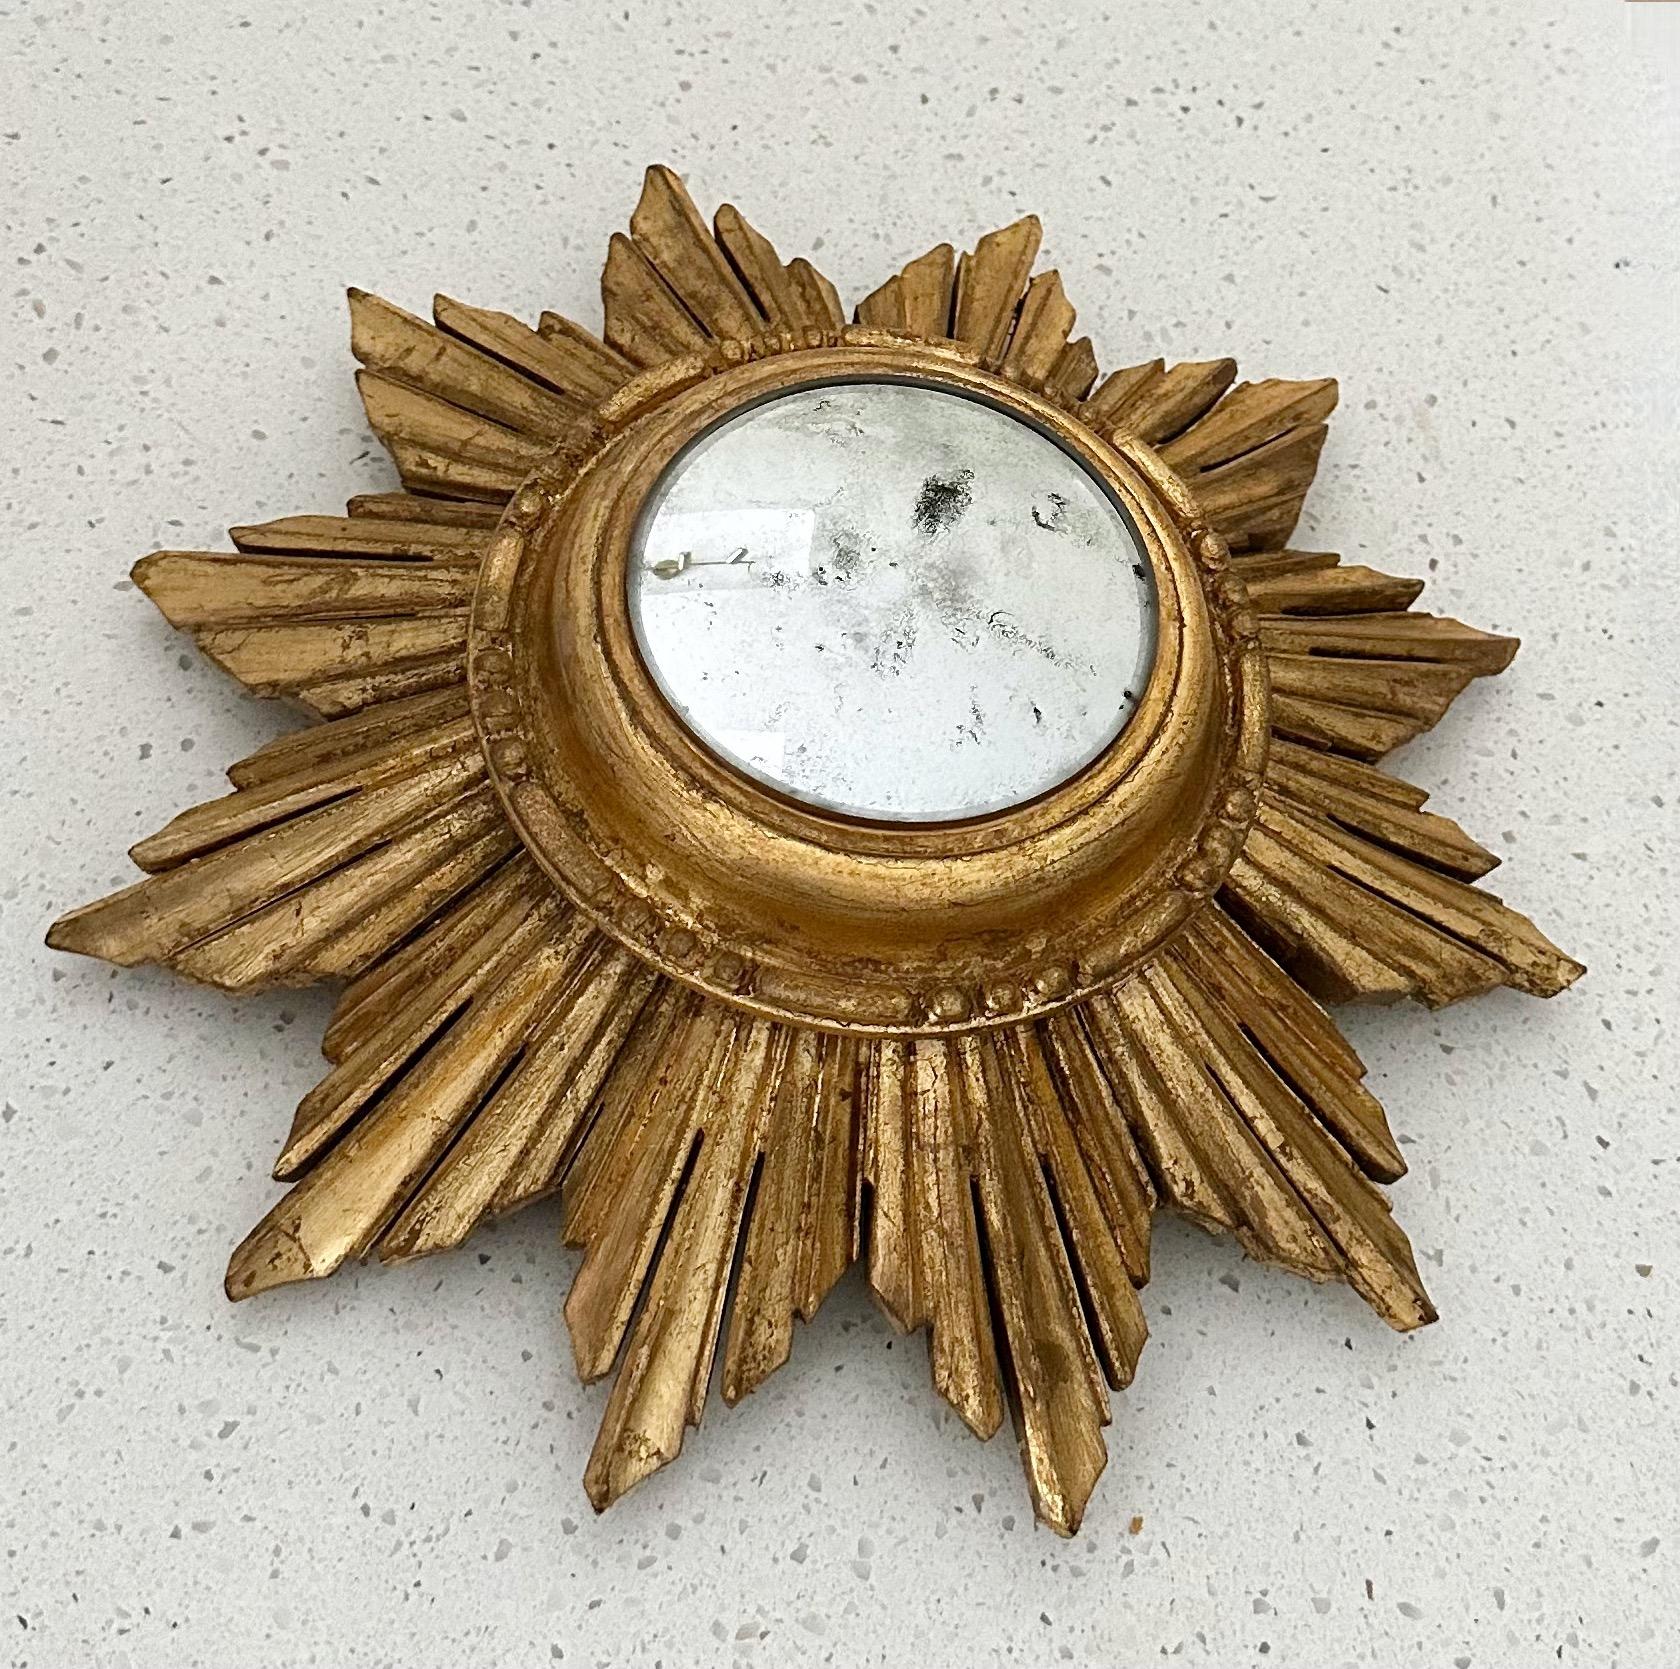 Kleinerer, konvexer Wandspiegel aus vergoldetem Holz mit Sonnenschliff (Starburst). Formal eine Uhr konvertieren, um Wand-Spiegel mit neueren gealtert, um ältere konvexen Spiegel aussehen.  Gesamtgröße Spiegel 12